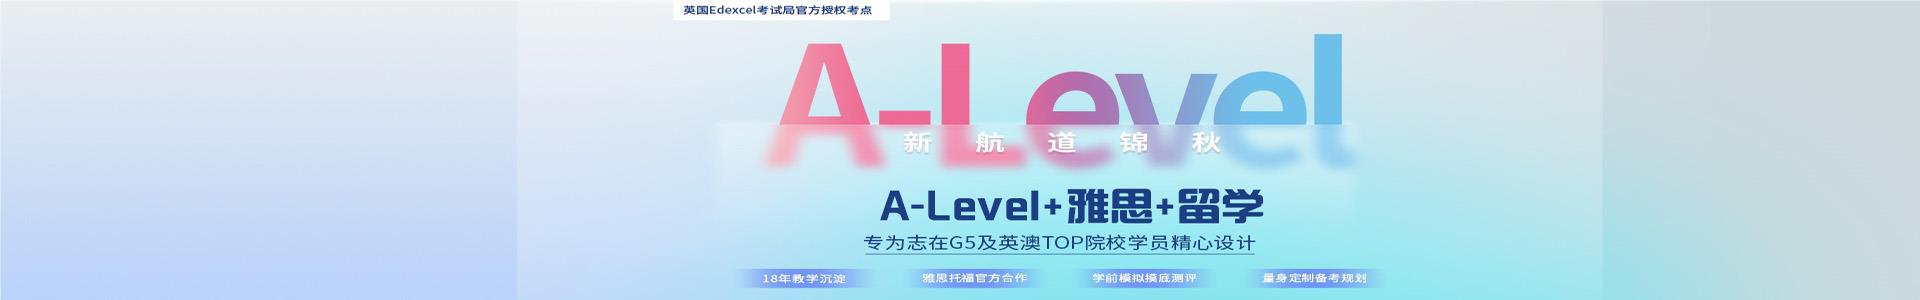 北京新航道a-level培训